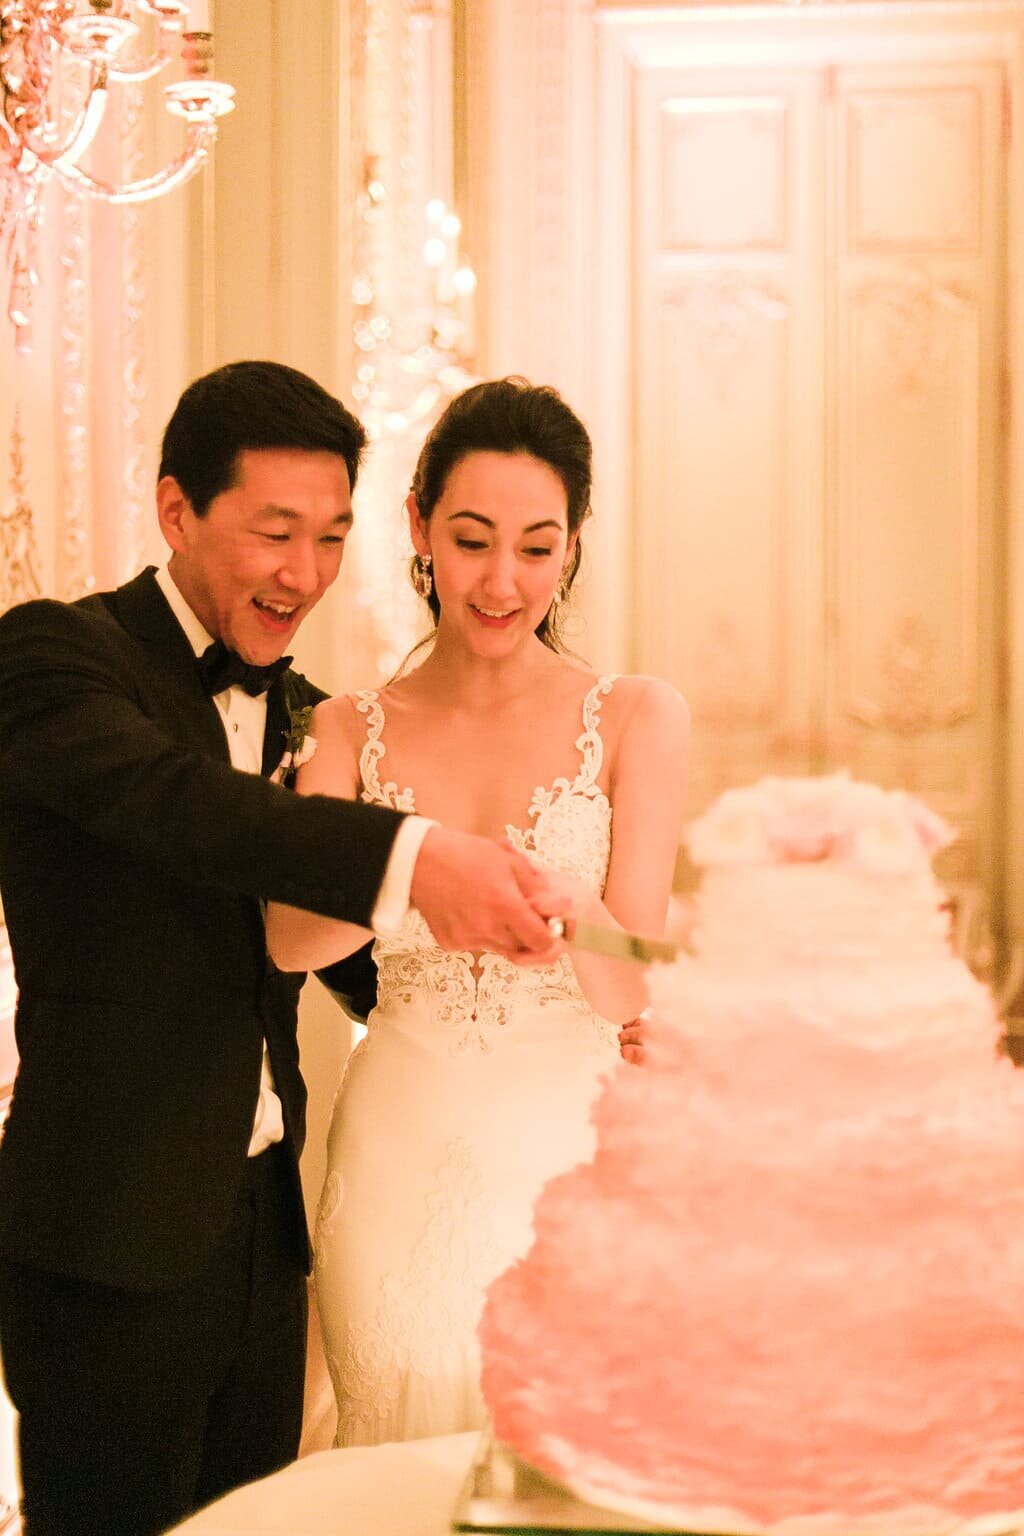 Wedding-cake-cutting-white-pink-cake